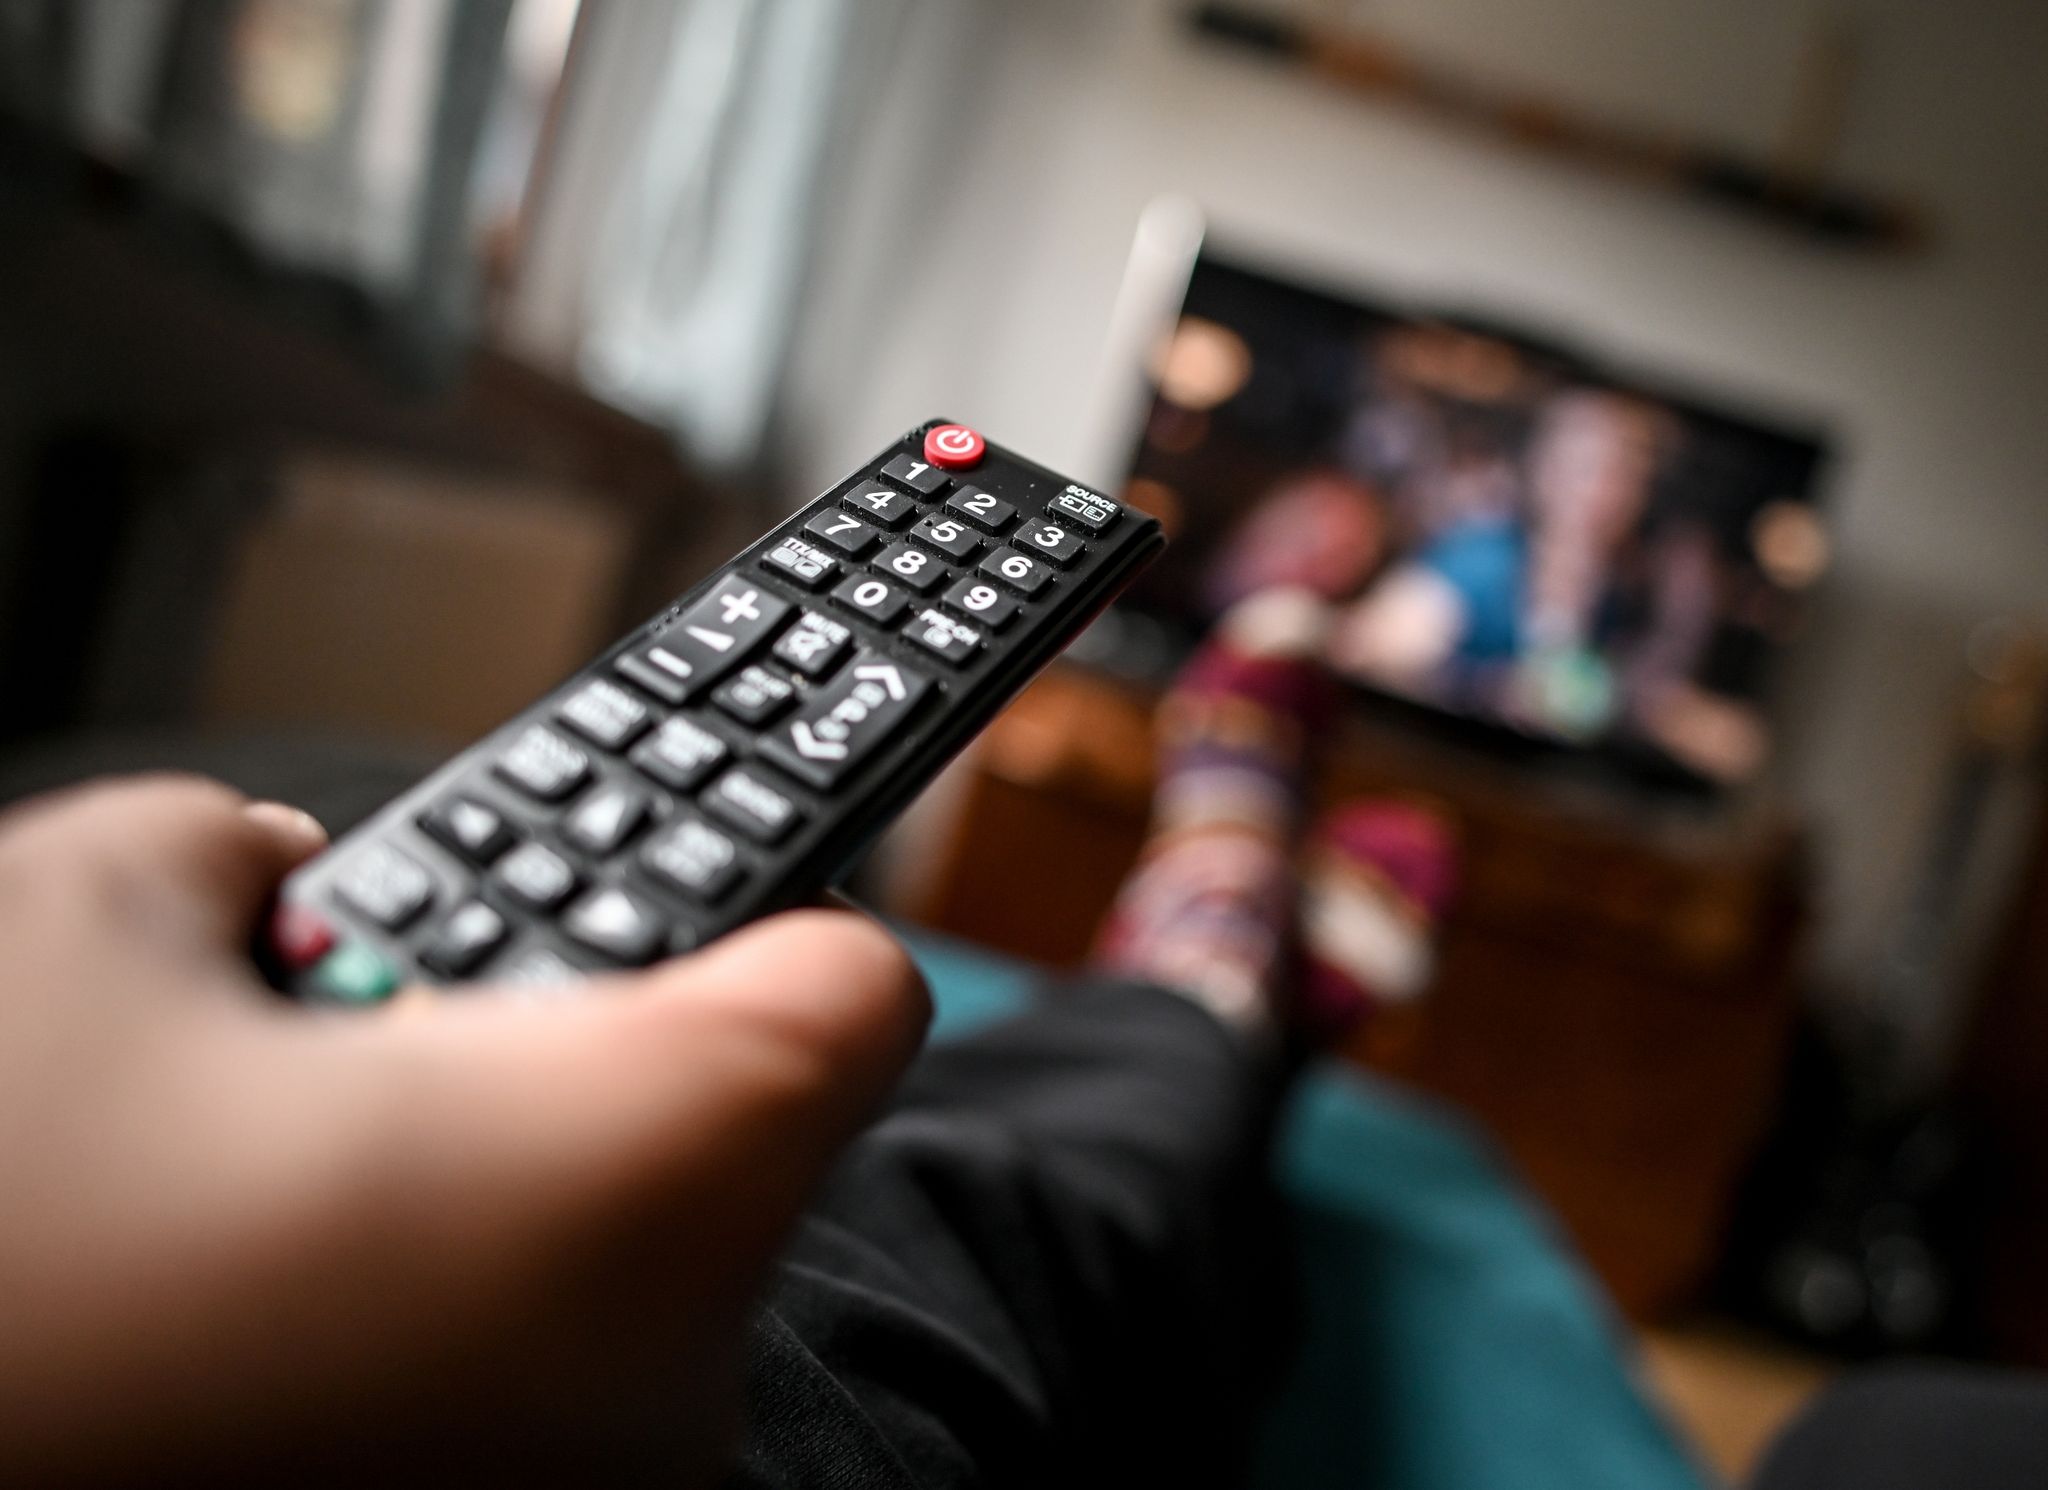 Auch beim TV lohnt es sich, Angebote zu vergleichen: Welche Sender gibt es in welcher Auflösung zu welchem Preis? Und wie sieht es etwa bei Gratis-Angeboten mit Werbung und zeitlichen Beschränkungen aus?